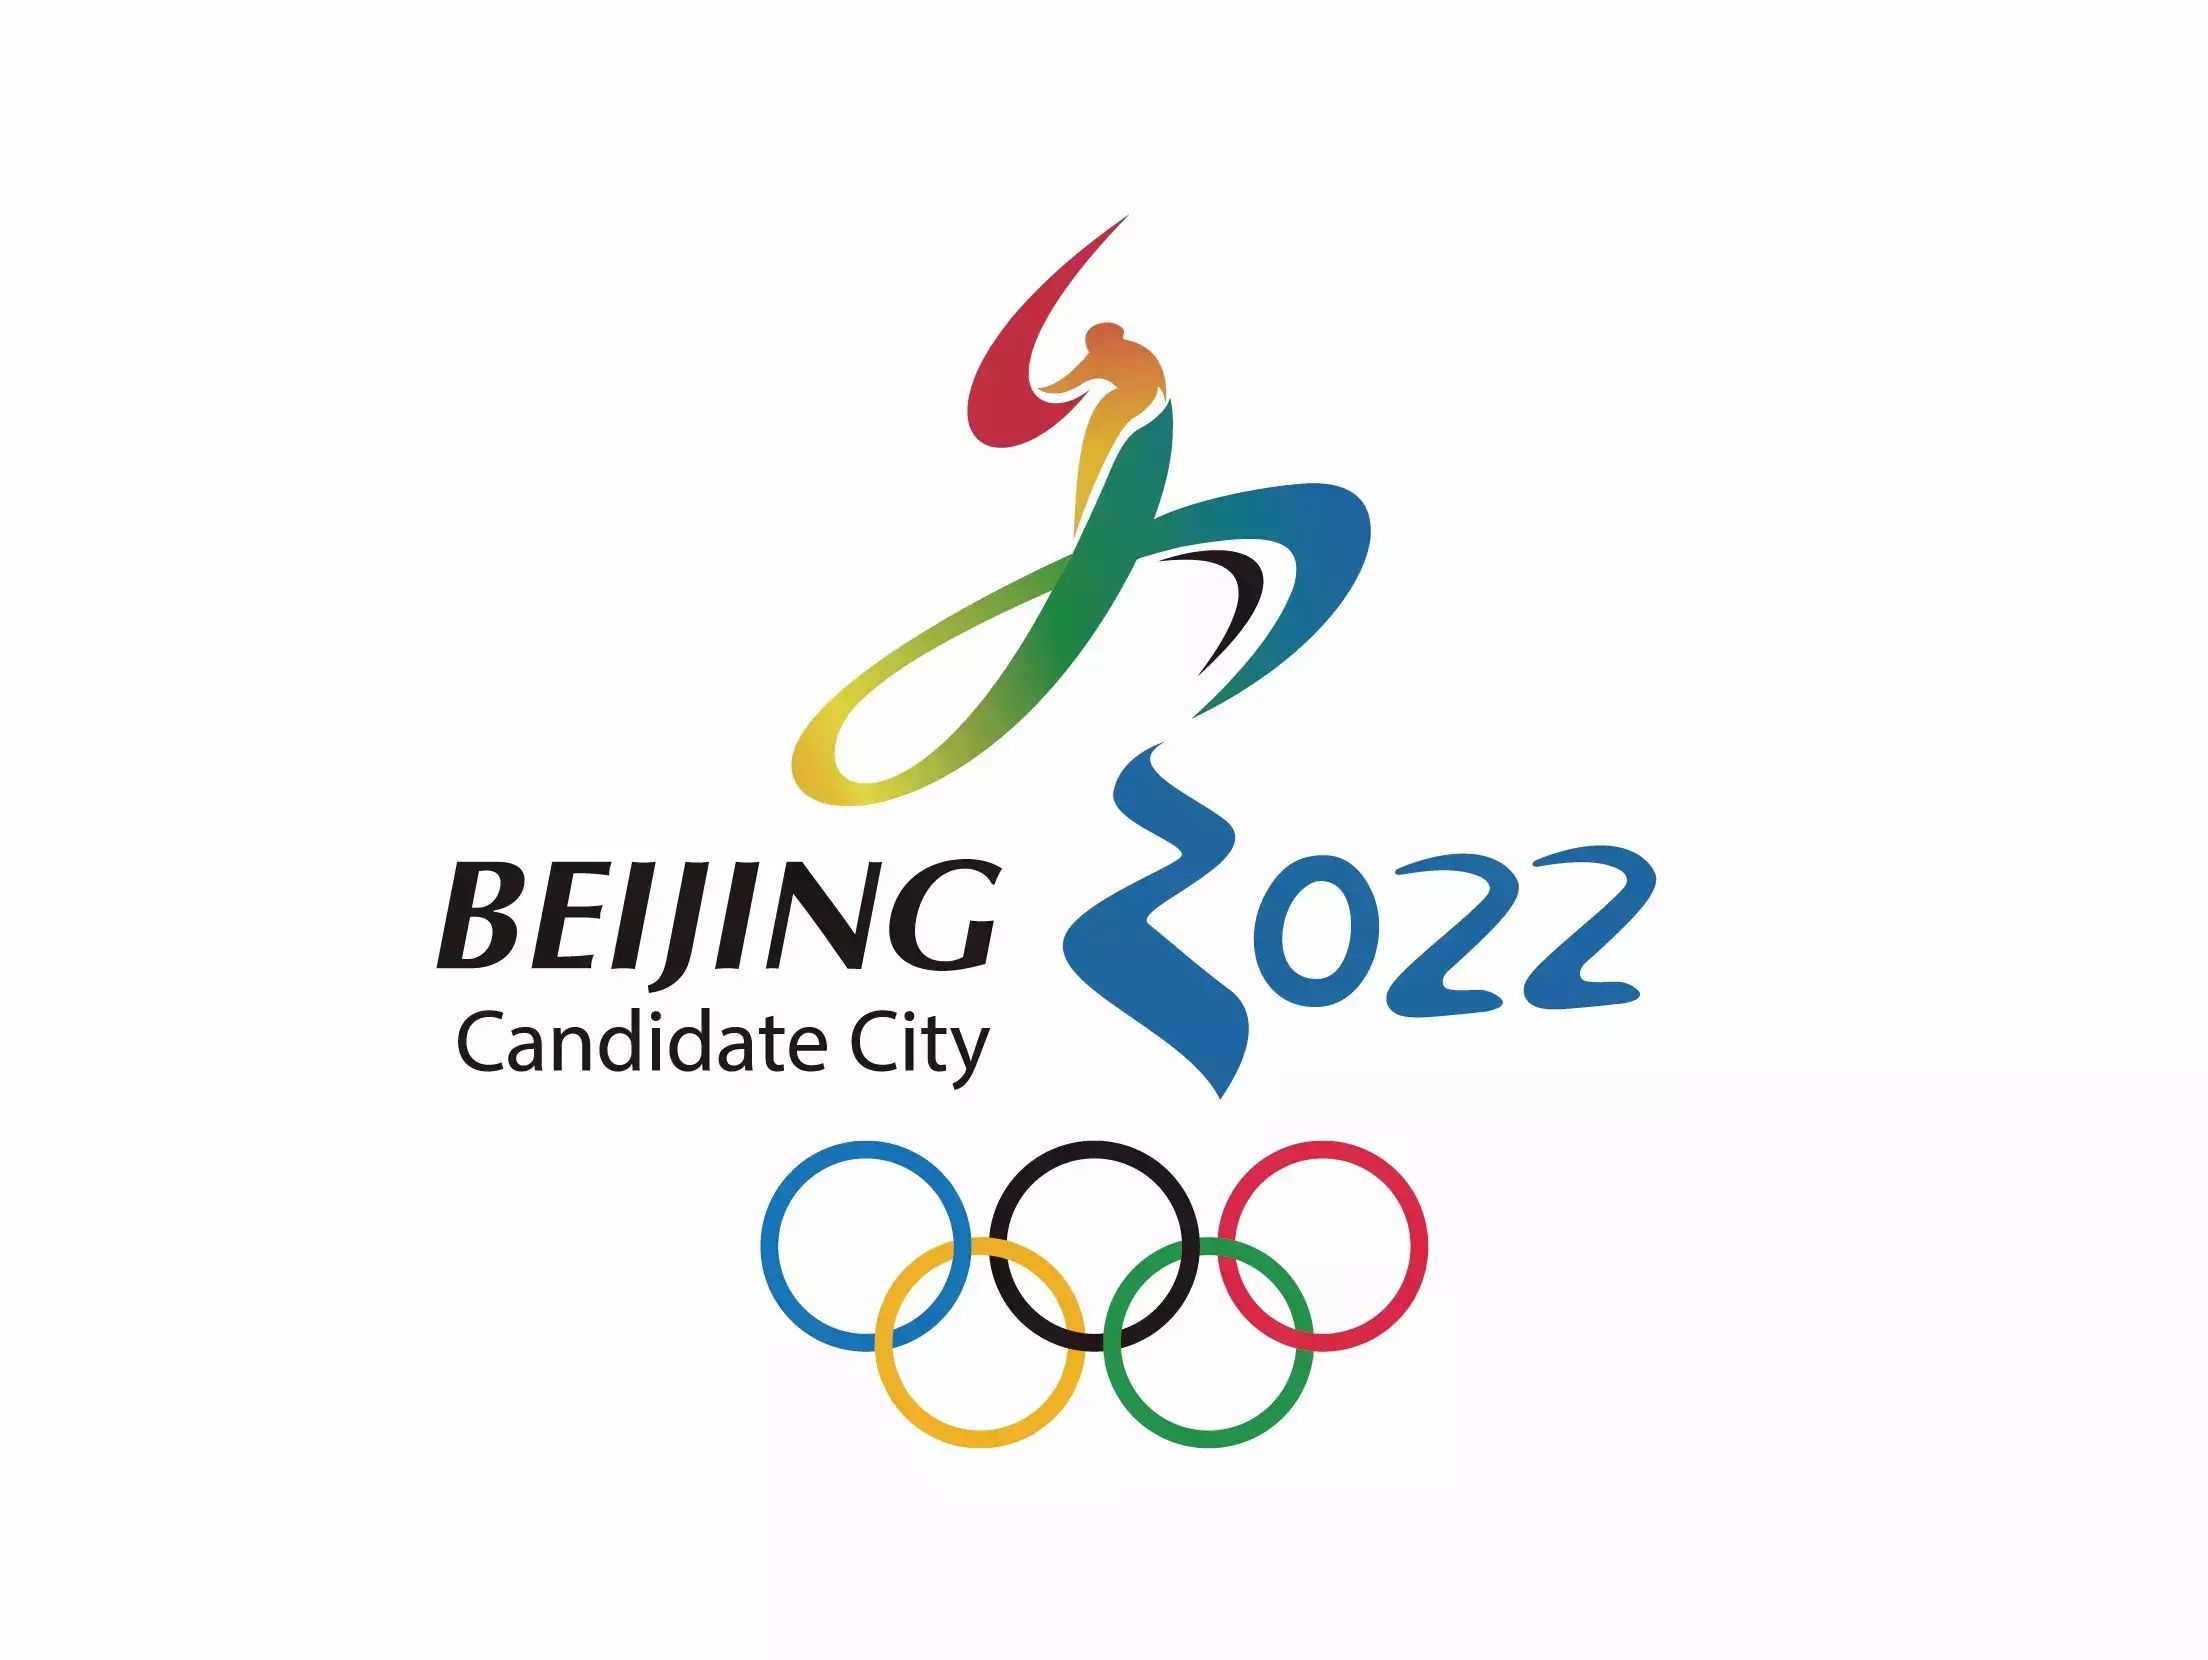 2015年7月31日,2022年冬奥会举办城市在马来西亚吉隆坡举行的国际